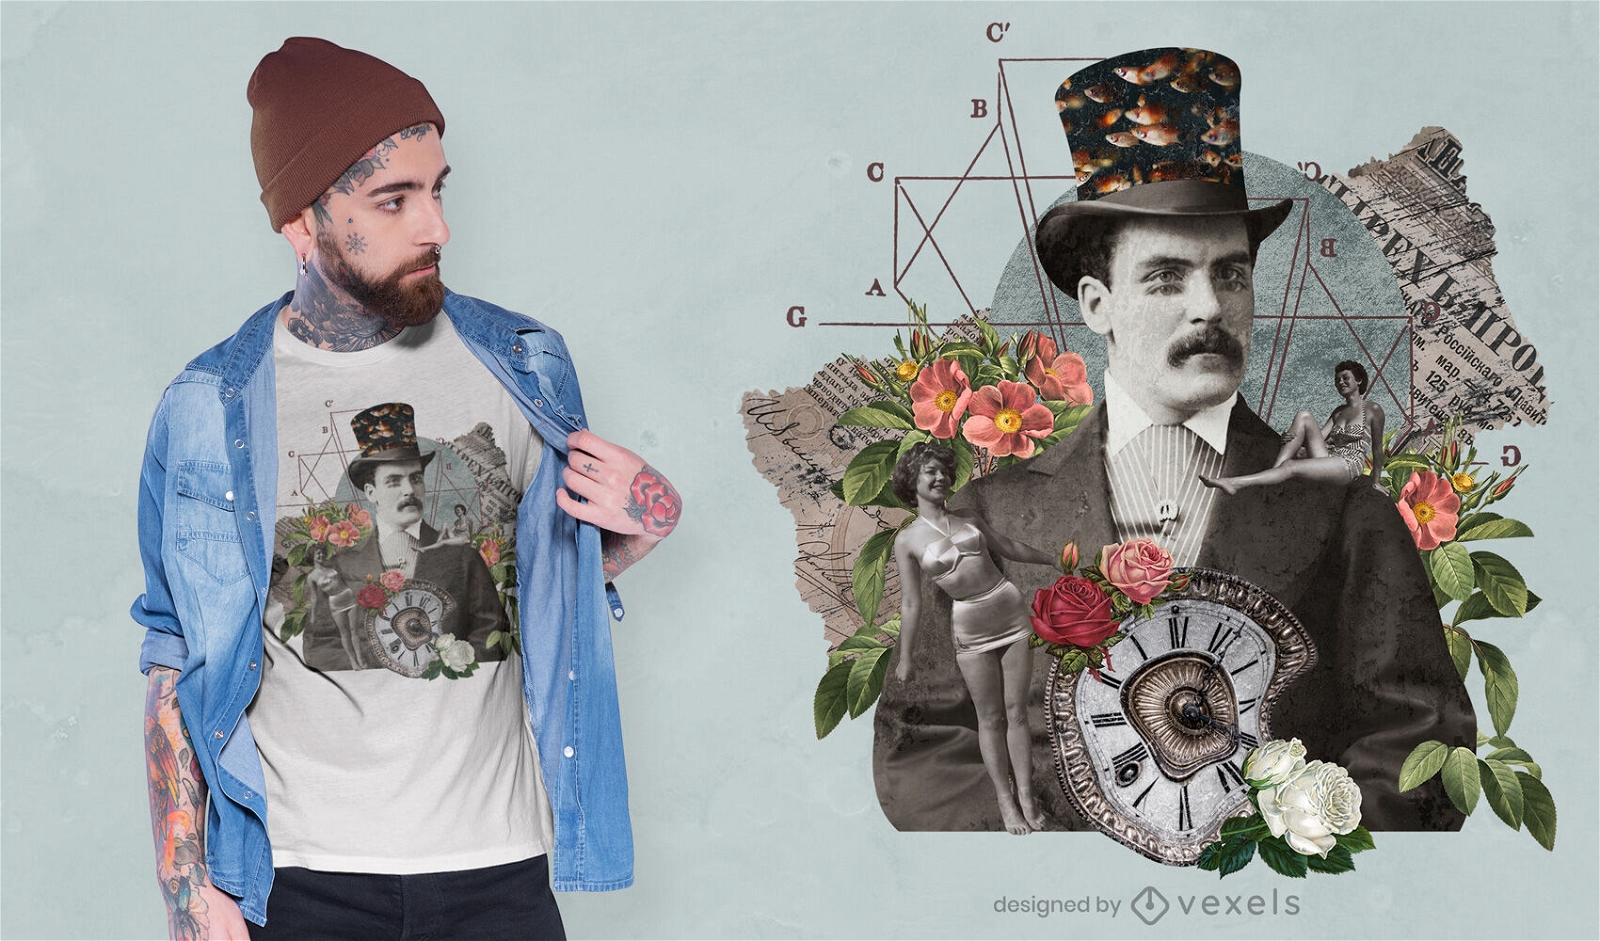 Diseño de camiseta psd de hombre collage vintage gótico